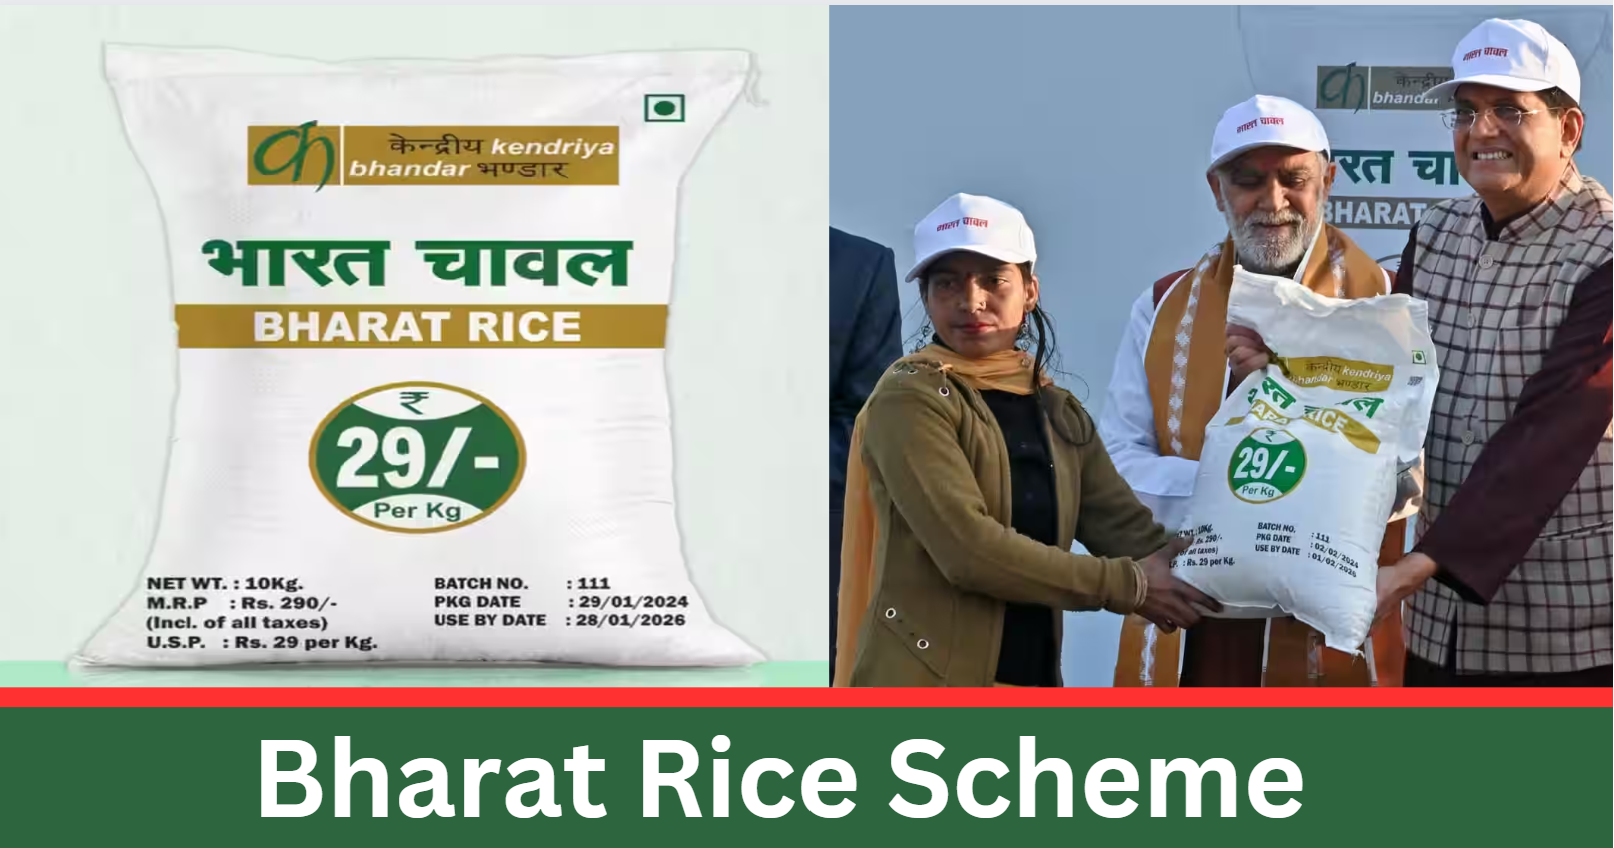 What is Bharat Rice Scheme?